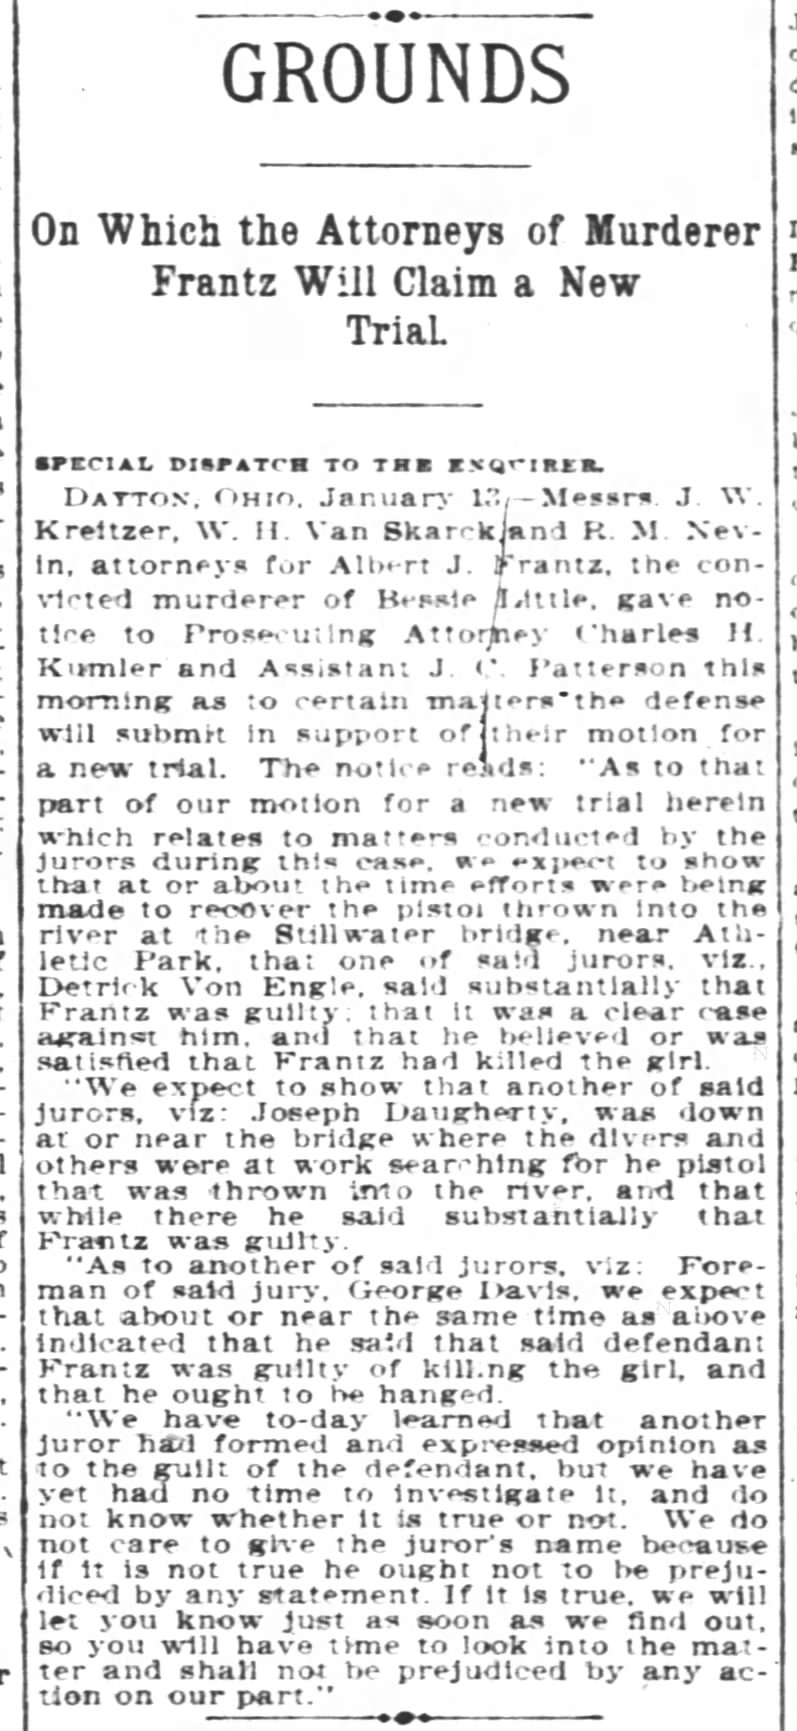 14 January 1897 Cincinnati Enquirer